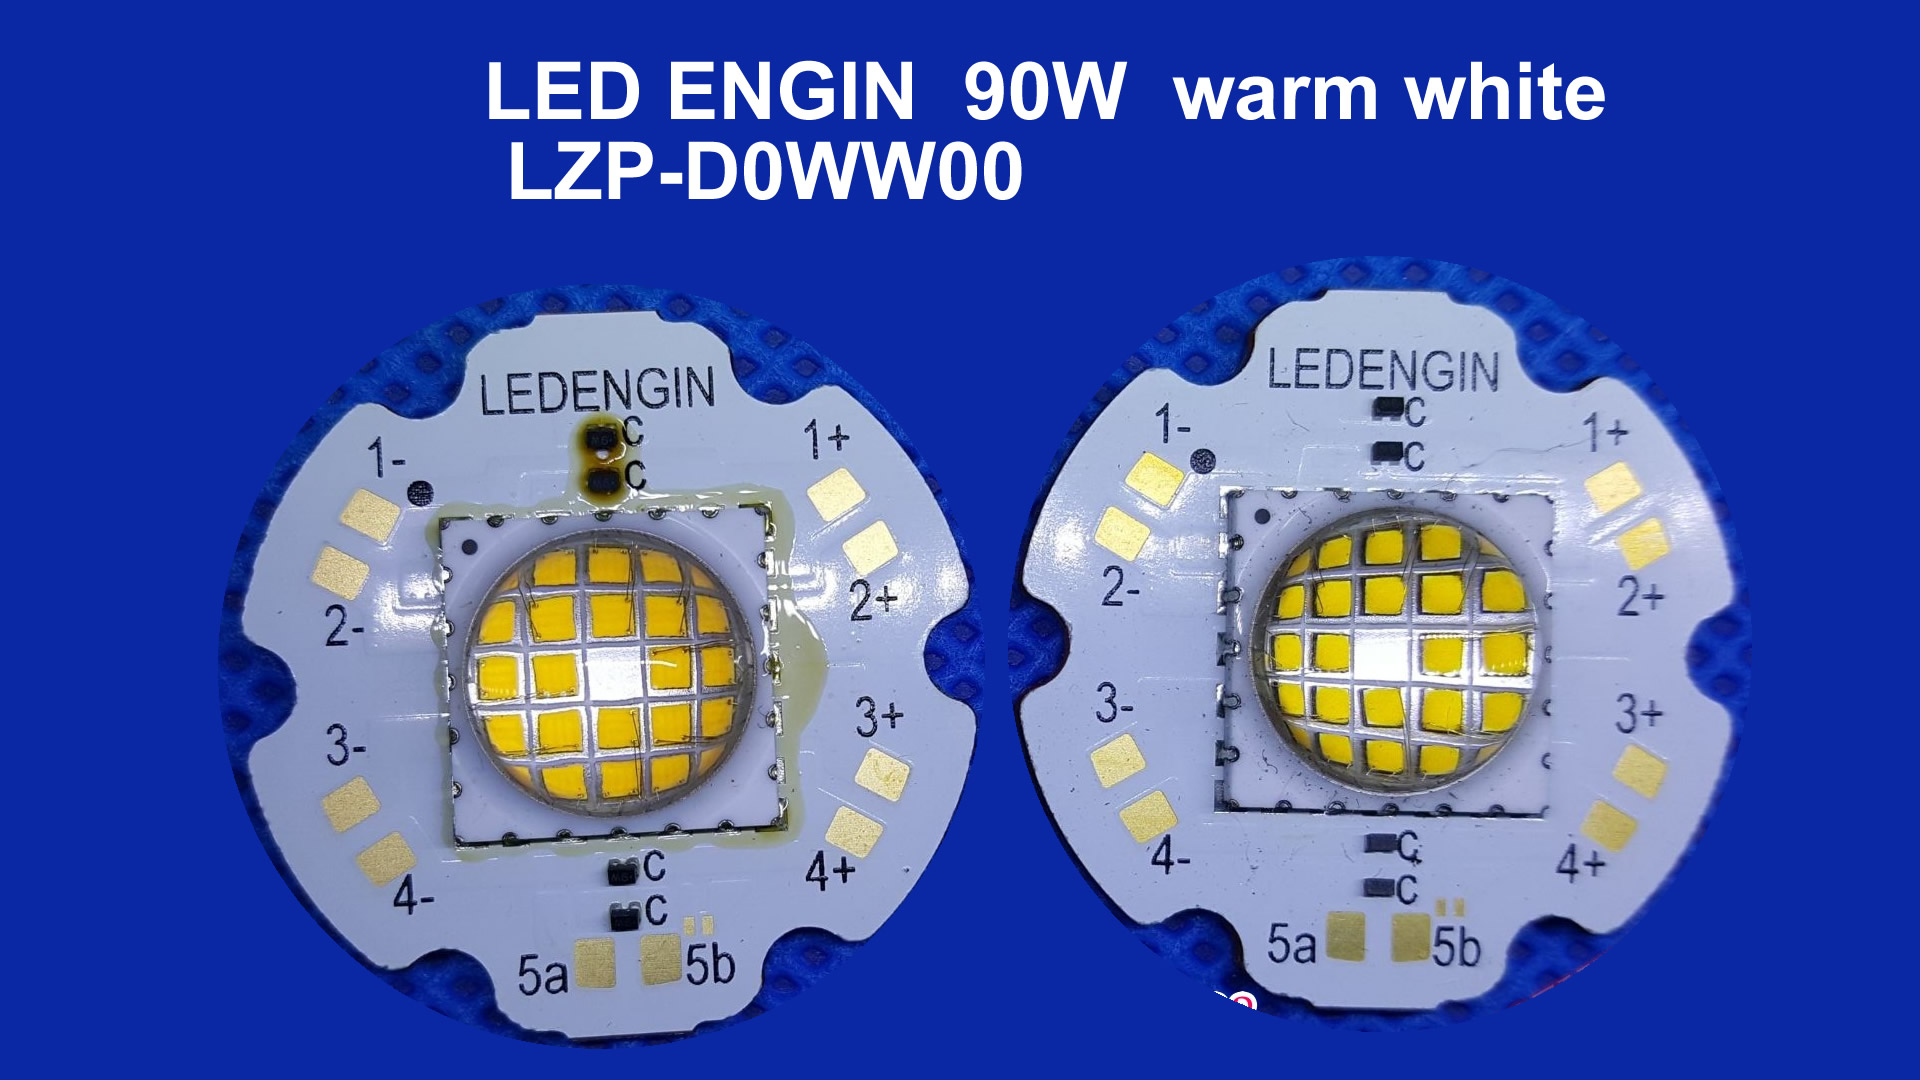 LZP-D0WW00 LEDENGIN 90W warmwhite